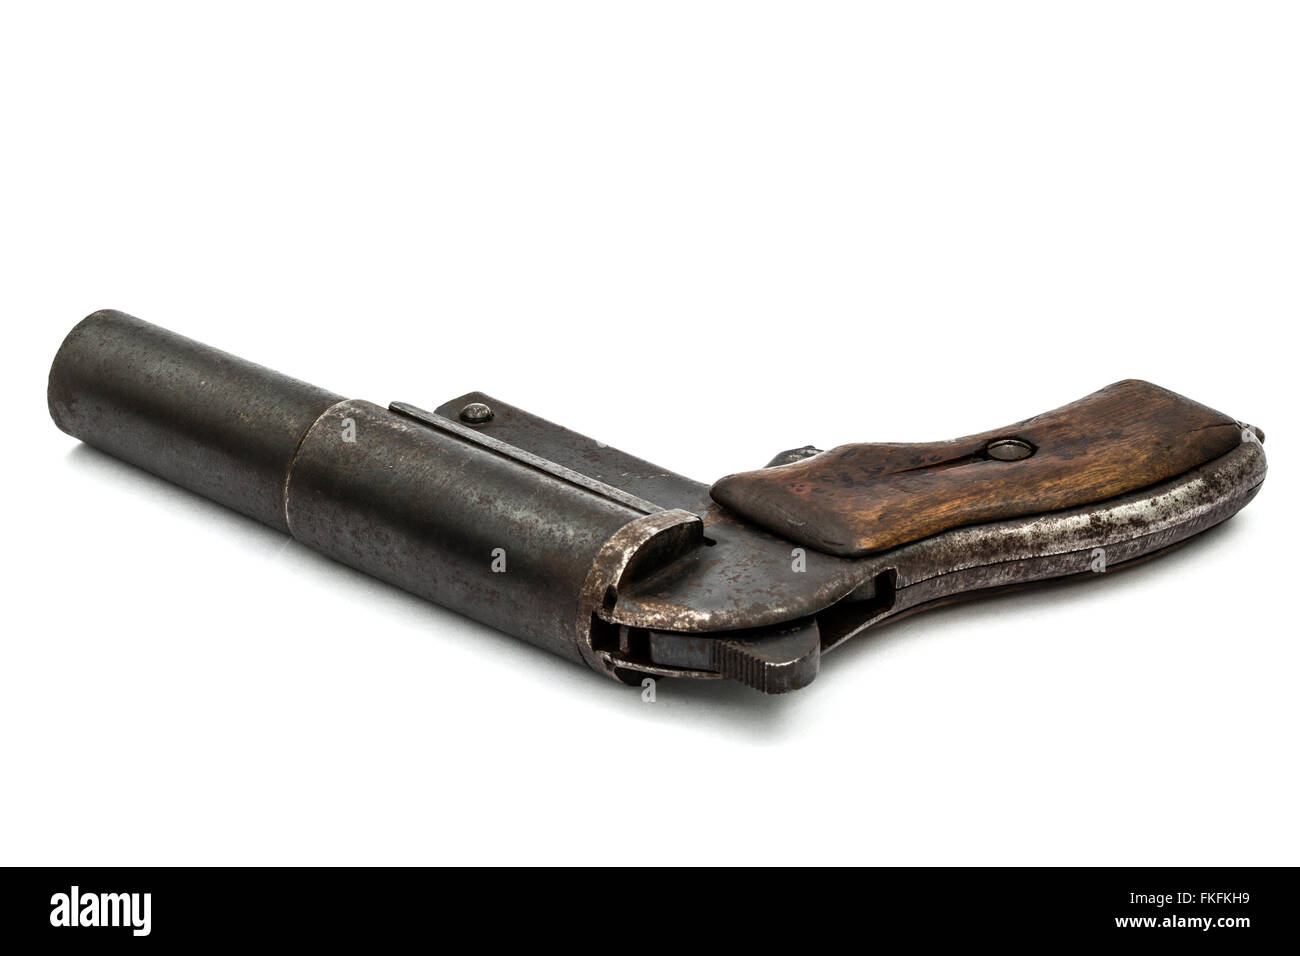 Segnale di vecchia pistola, flare gun, isolati su sfondo bianco Foto Stock